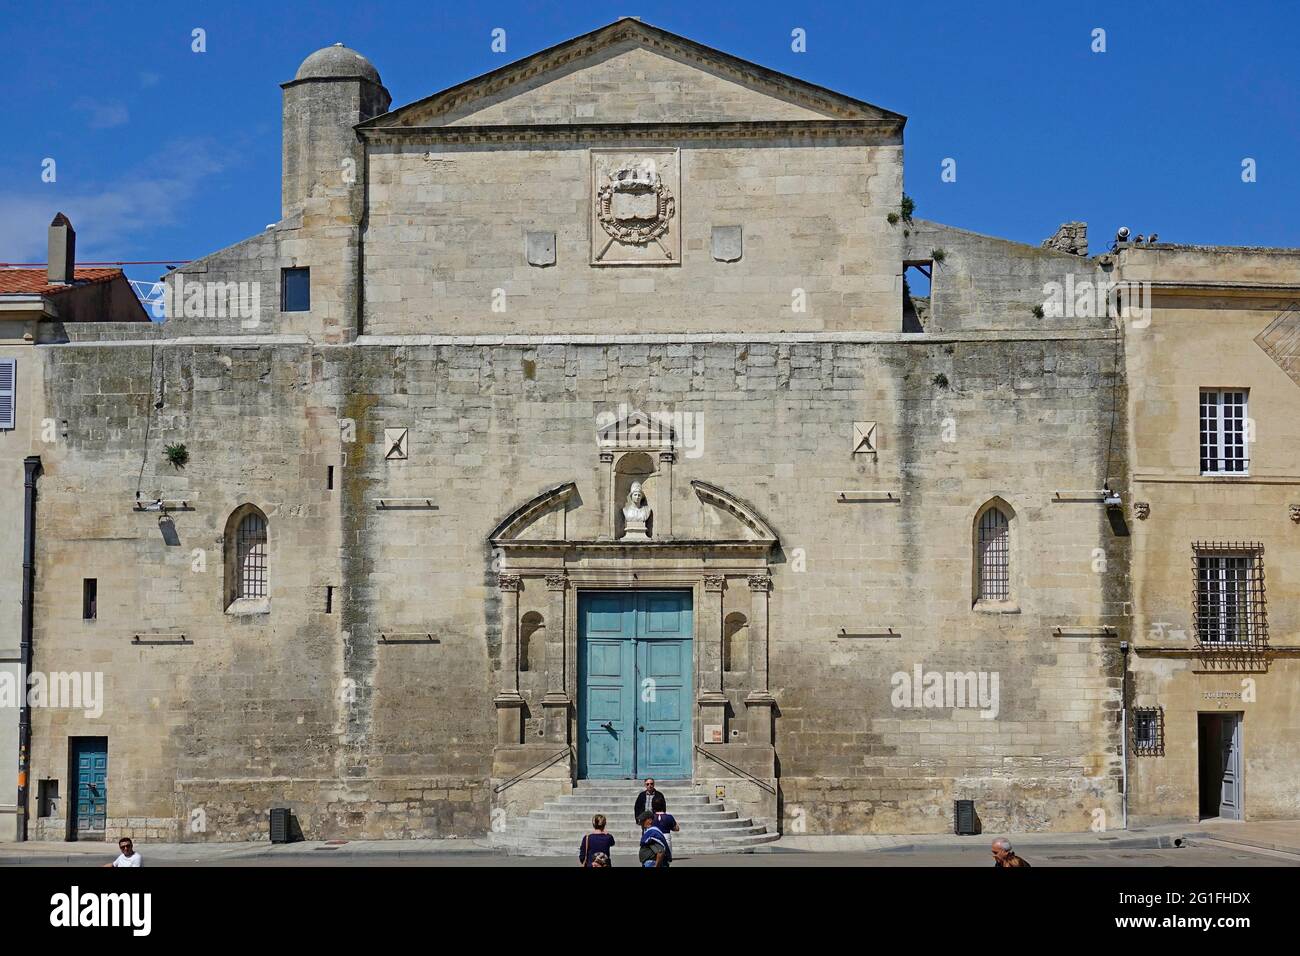 Place de la Republique with former church Sainte Anne d'Arles, Arles, Department Bouches-du-Rhone, Region Provence Alpes Cote d'Azur, Mediterranean Stock Photo